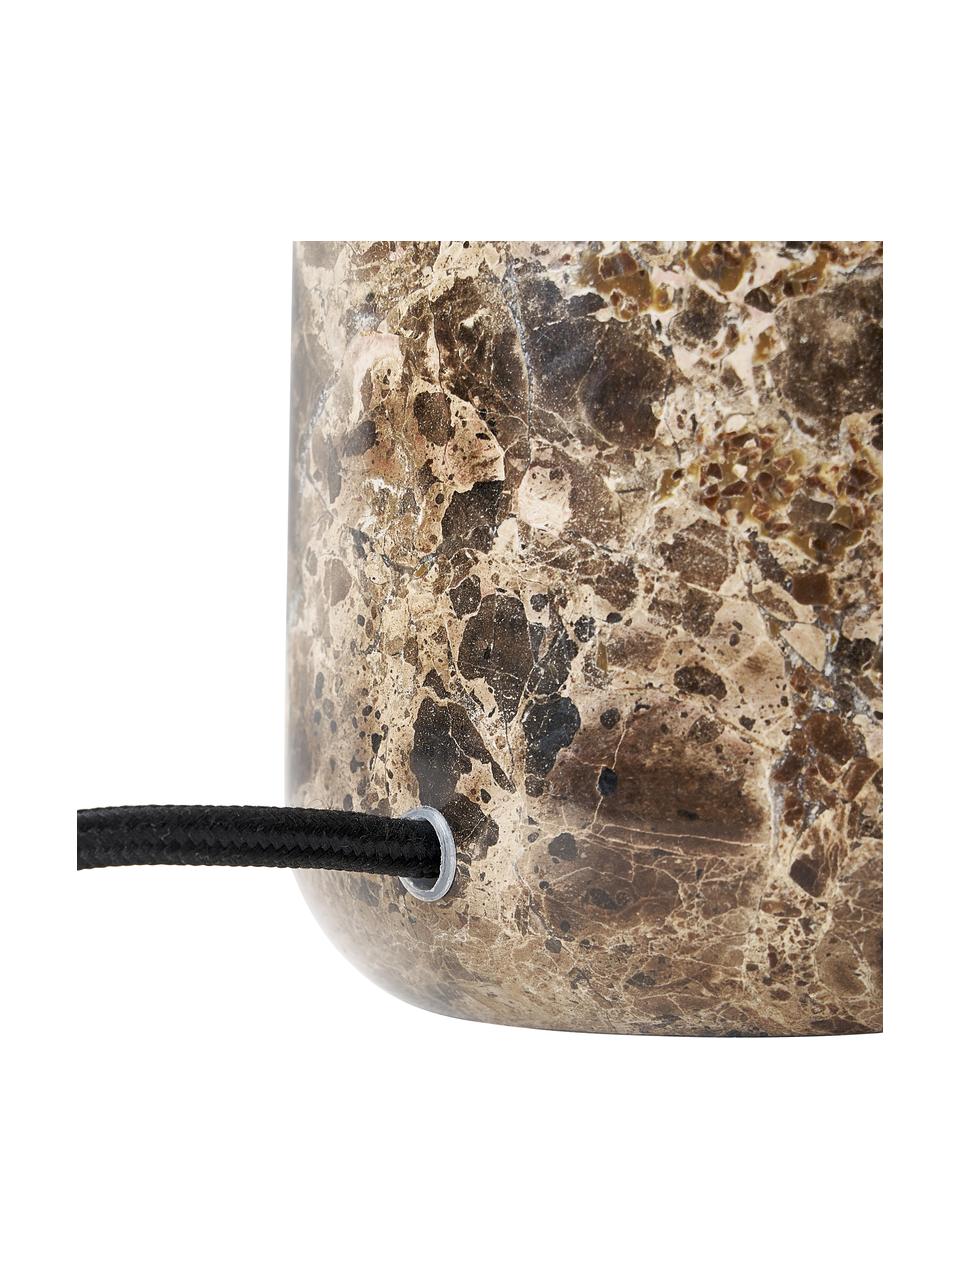 Tischlampe Mariella mit Marmorfuß, Lampenschirm: Glas, Lampenfuß: Marmor, Metall, Maromrbraun, Ø 32 x H 33 cm